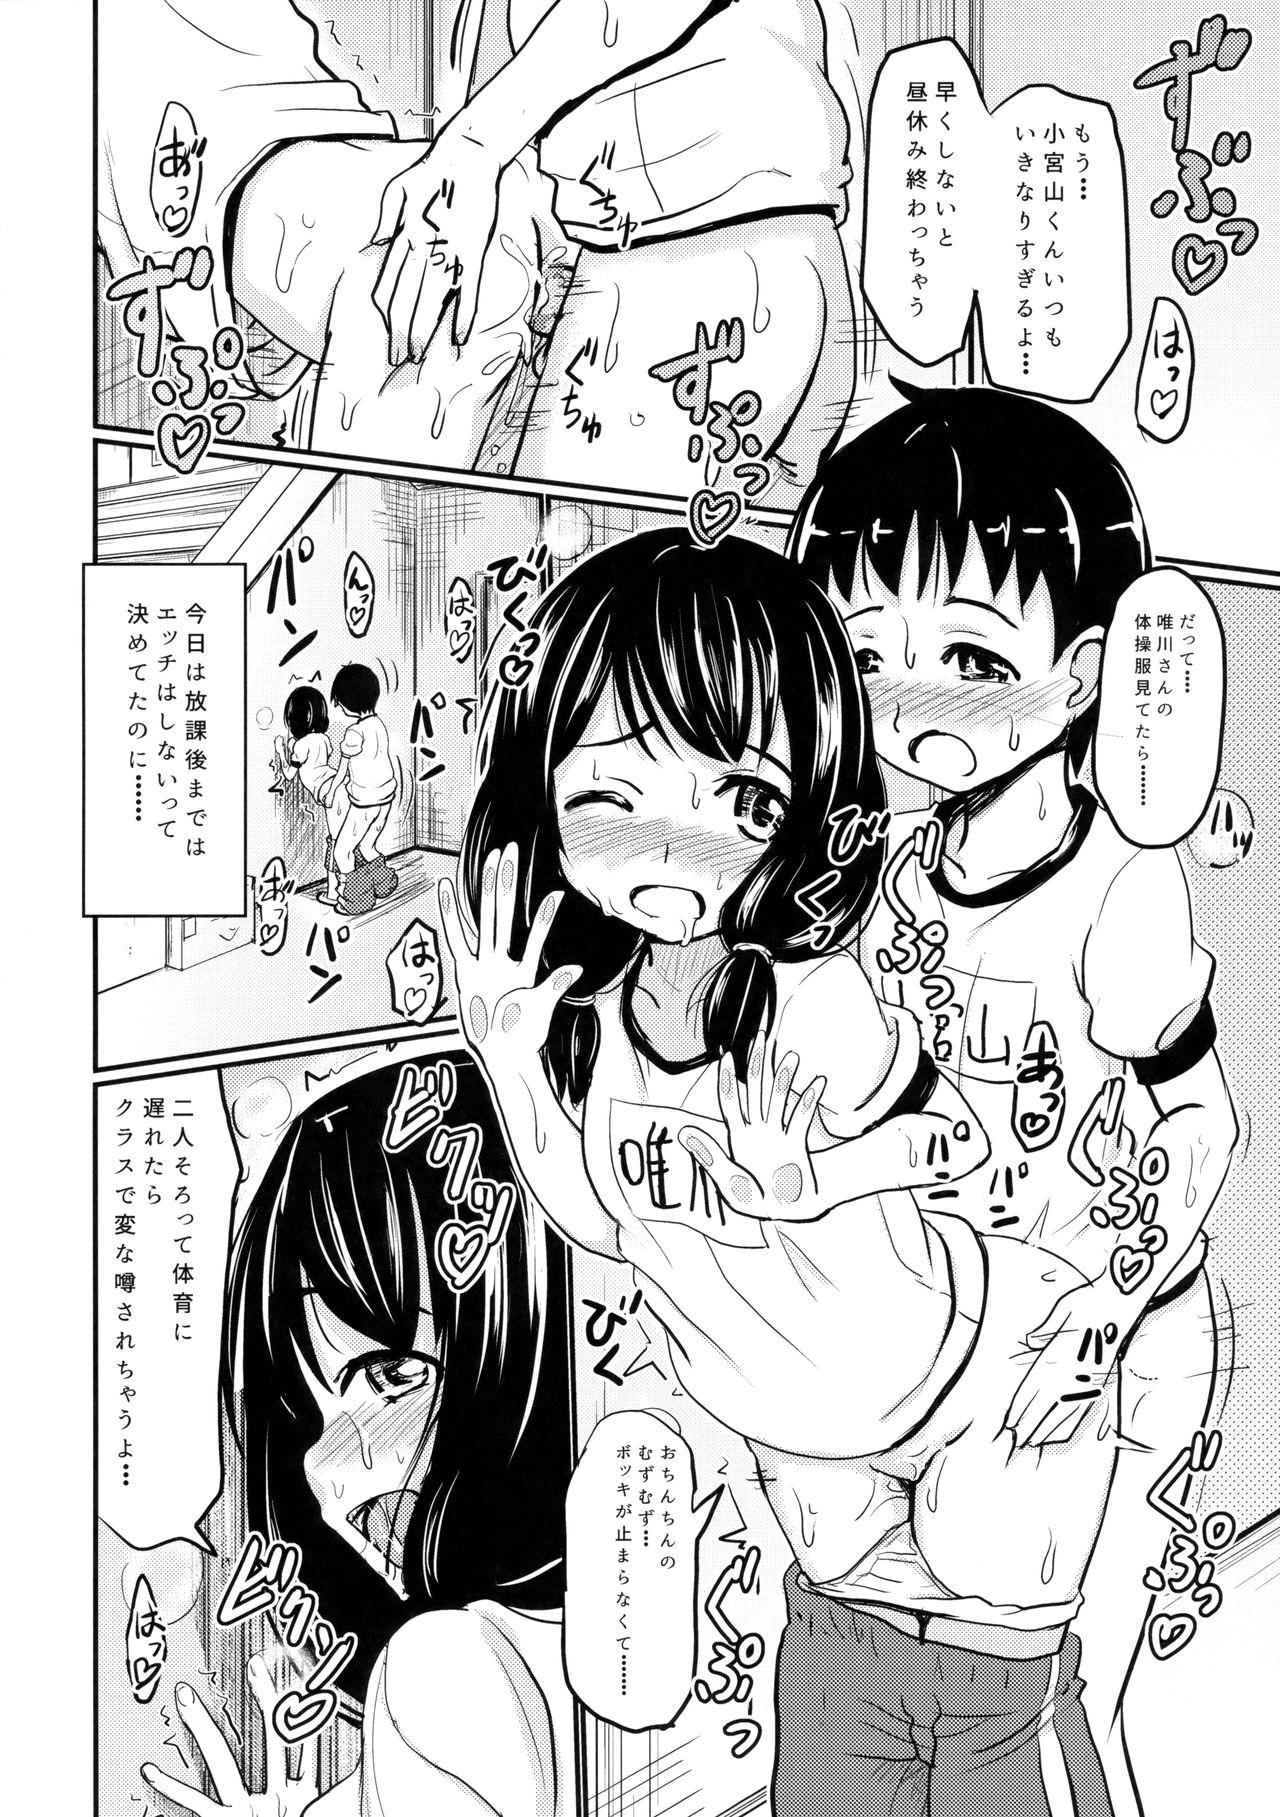 Verga Shougakusei Bitch wa Saikou daze!! Yuikawa Mayu no Dokidoki Ecchi wa Tomerarenai Hen Exhibitionist - Page 7